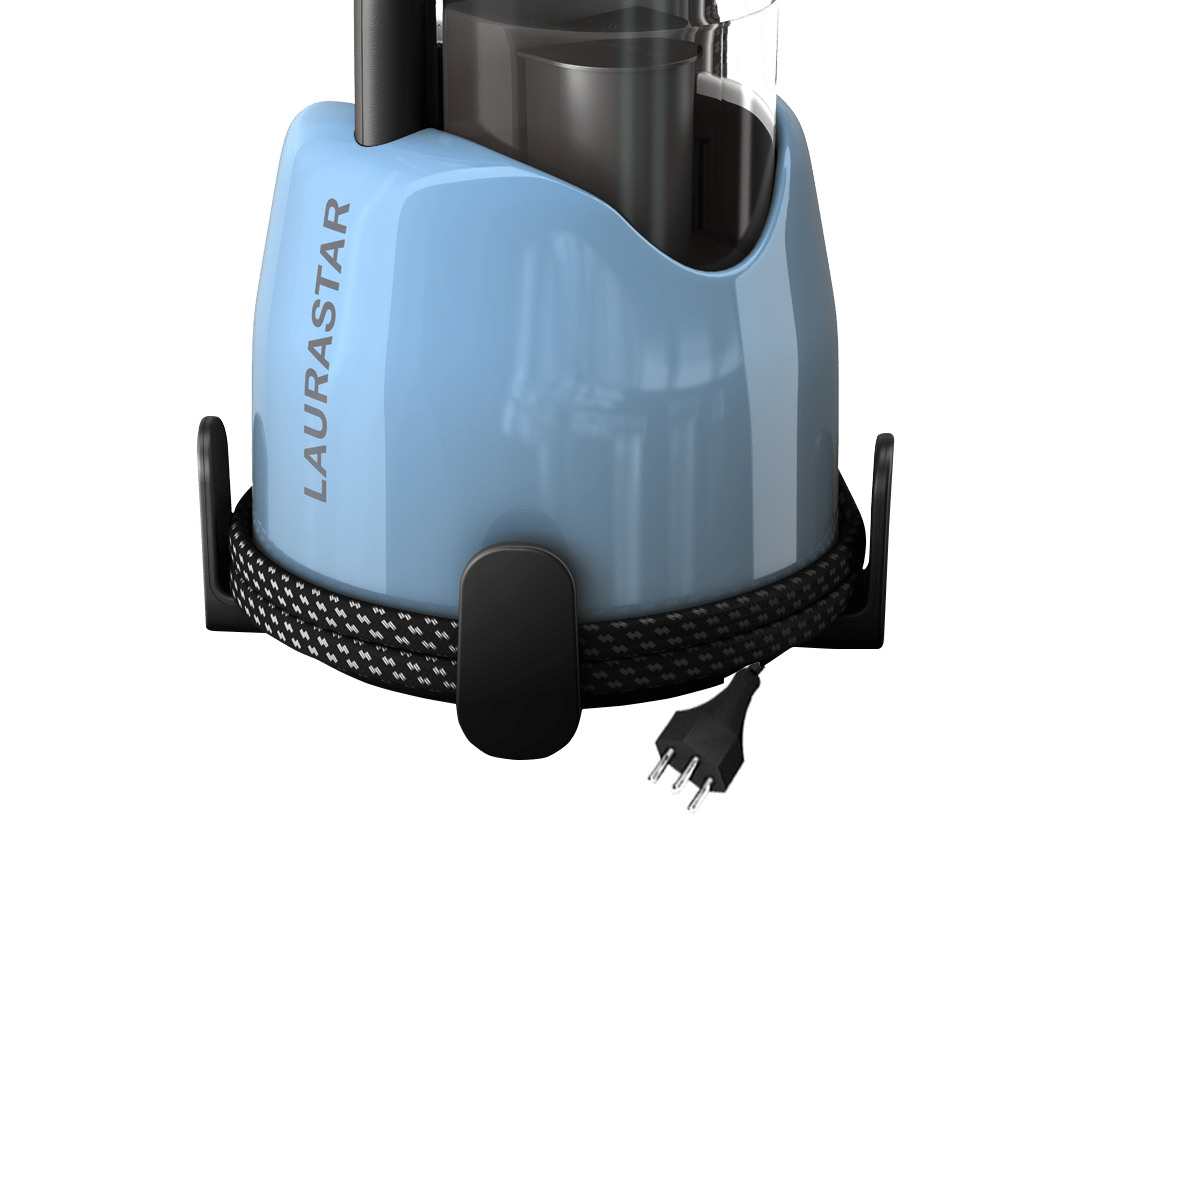 Laurastar Lift Plus Blue Sky - Steam generator | Dampfbügeleisen